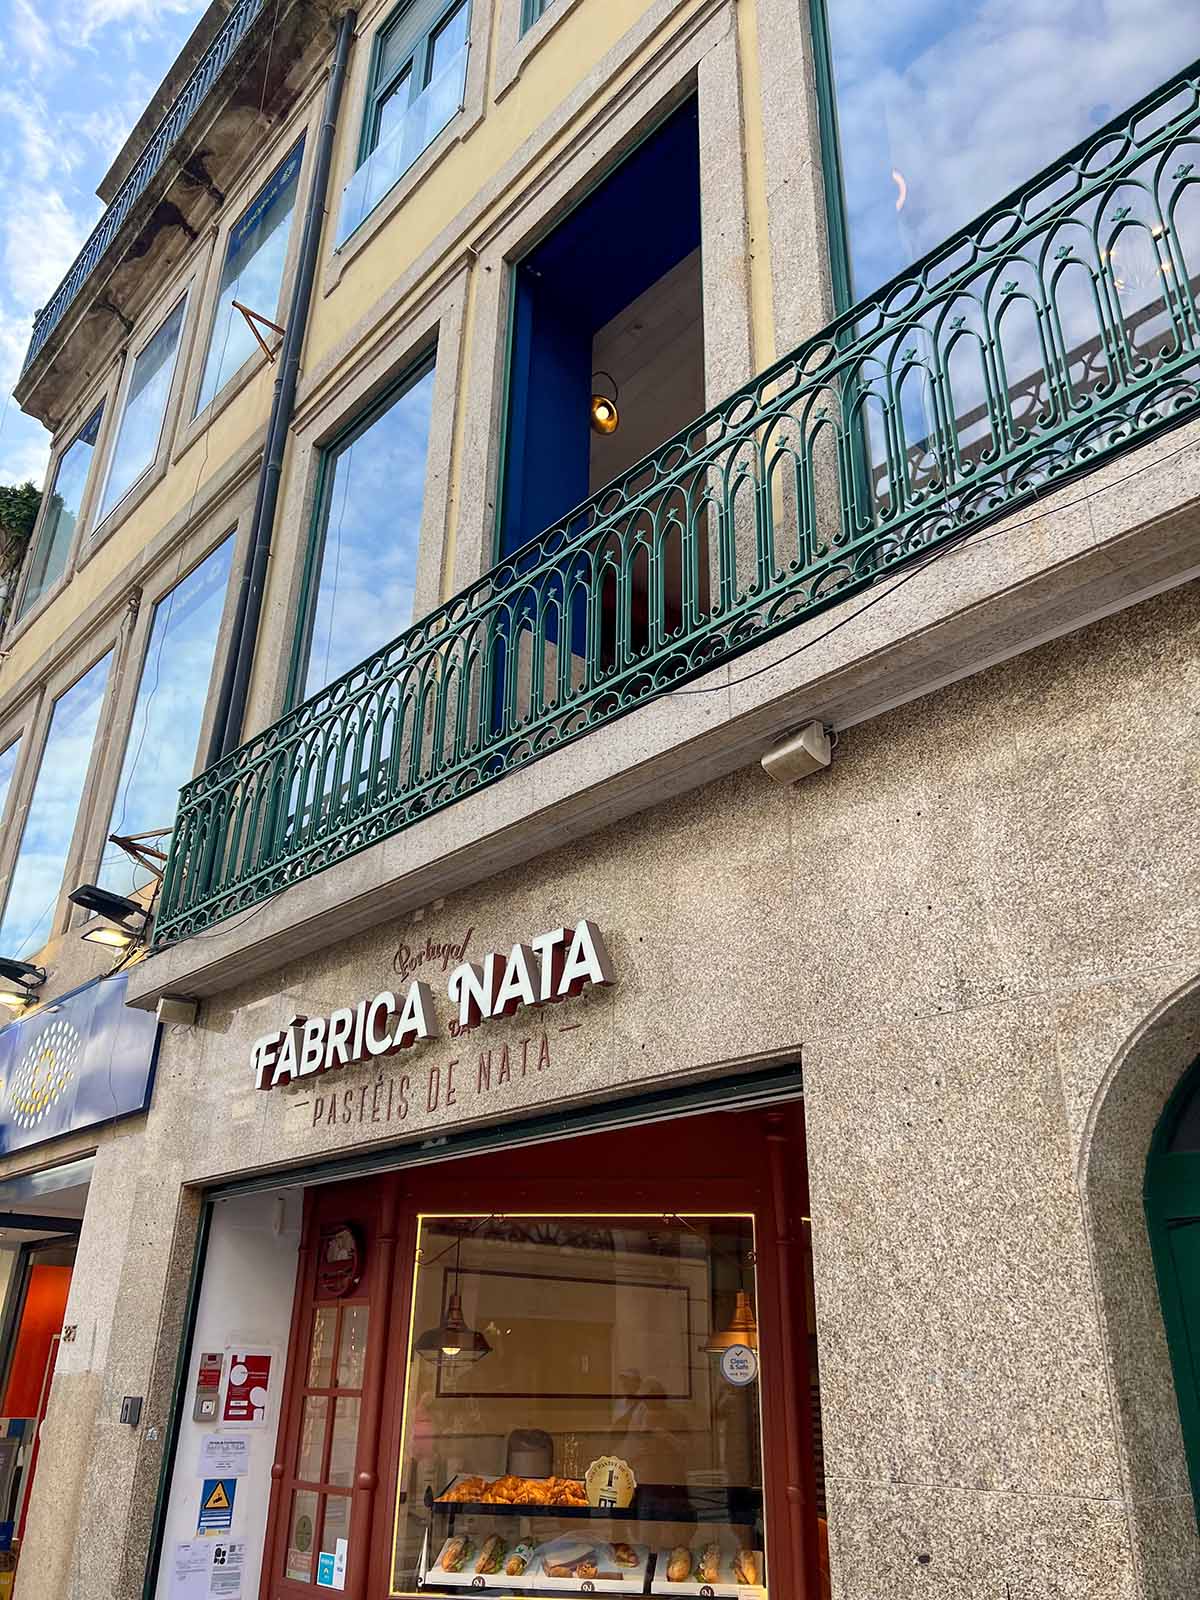 Exterior of Fabrica de Nata in Porto.